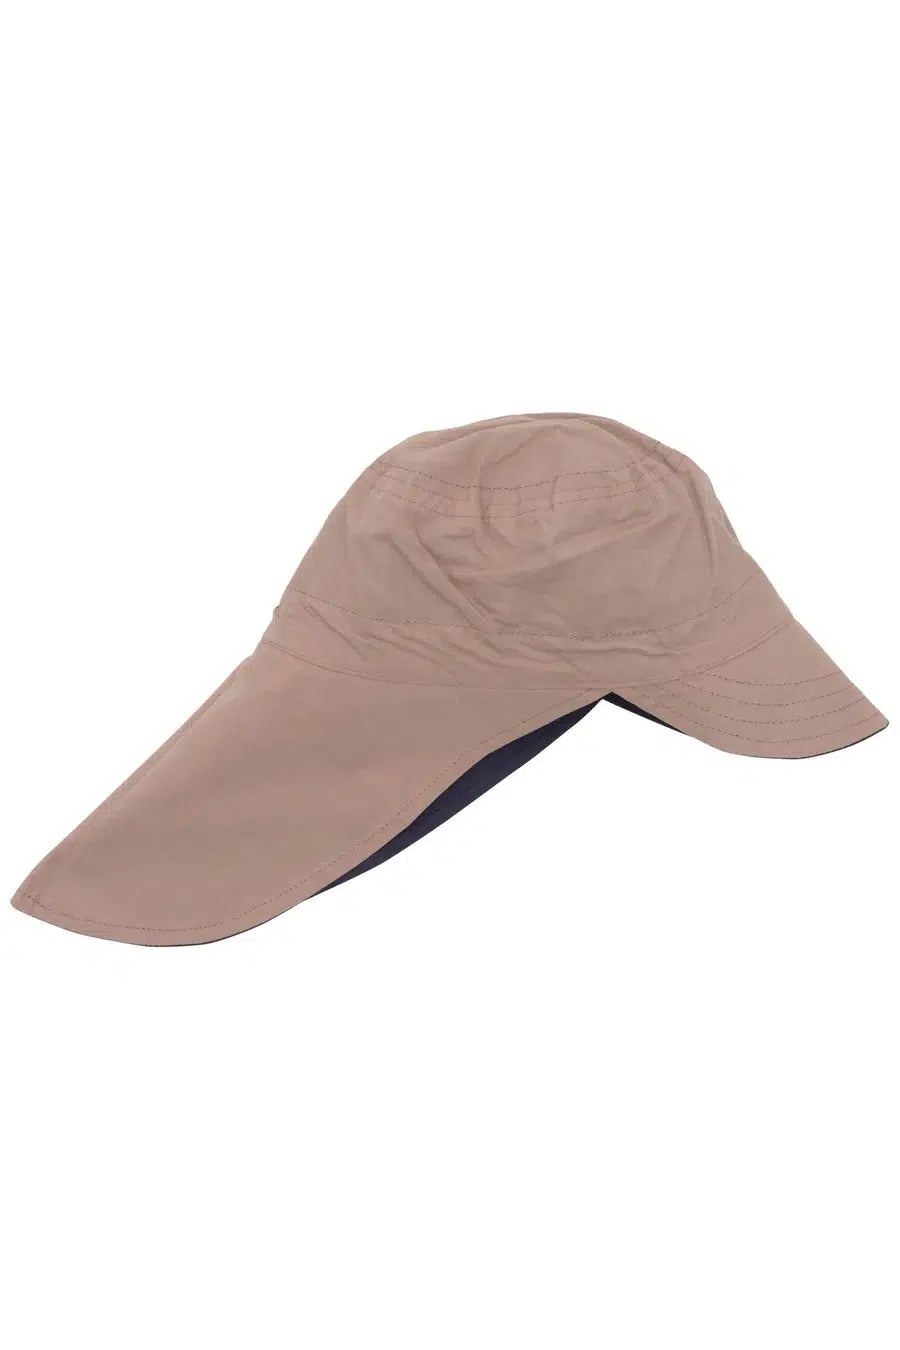 Copenhagen Colors - Økologisk Vendbar Sommer Hat med lang skygge - Navy Beige - Solhat - MamaMilla